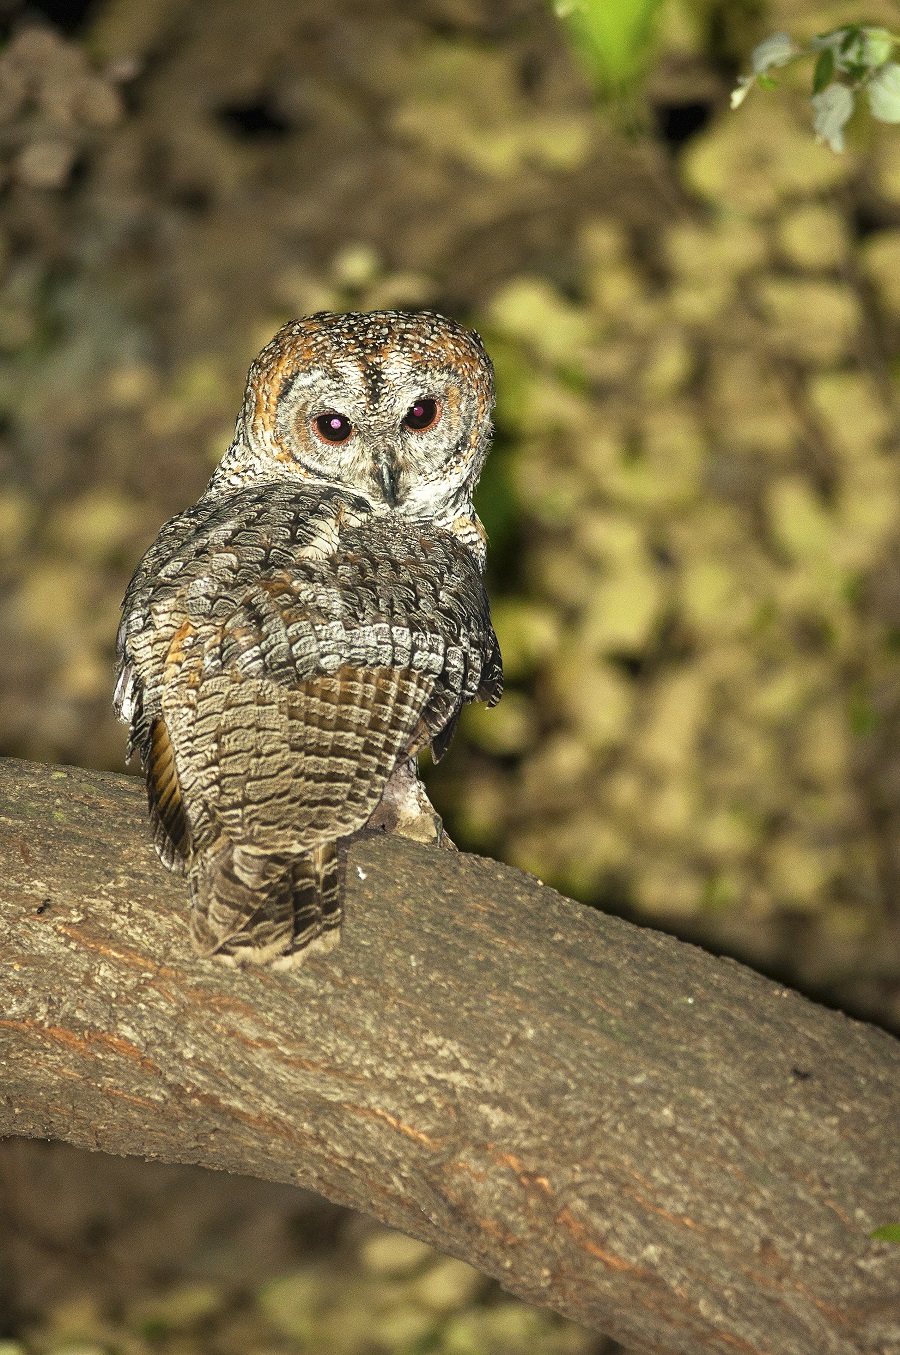 Doctor sights rare owl species in Prayagraj